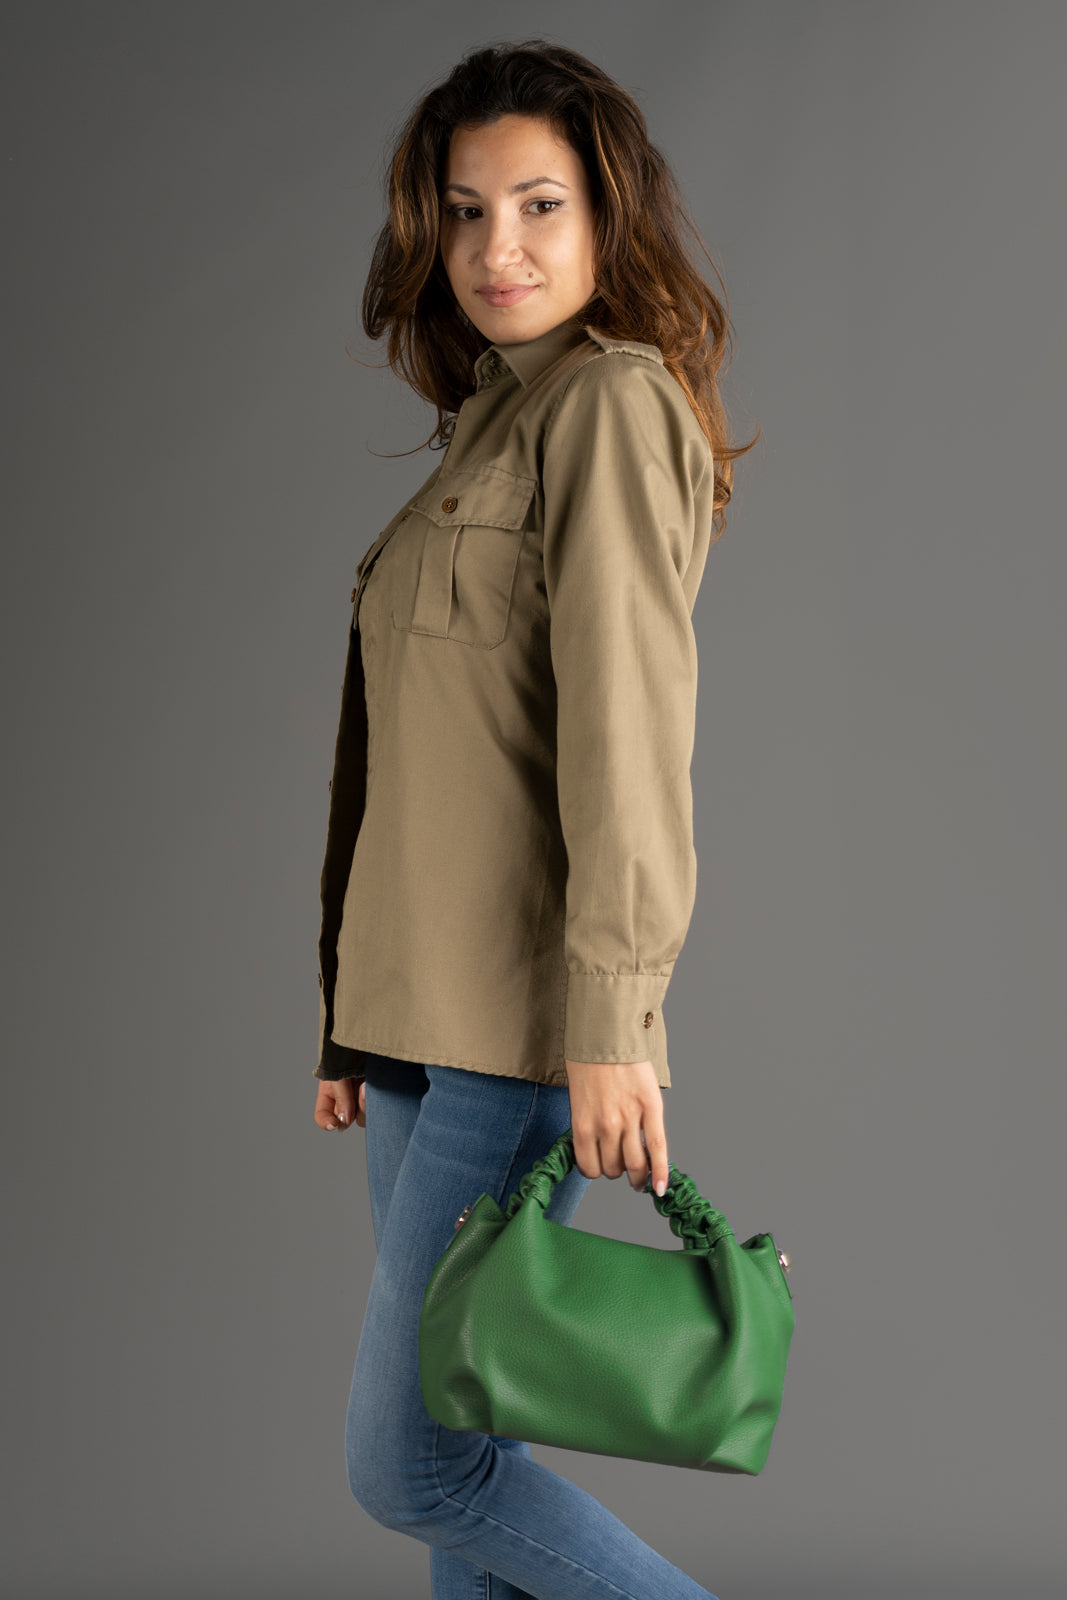 MAYA GREEN Handbags LoveAdora